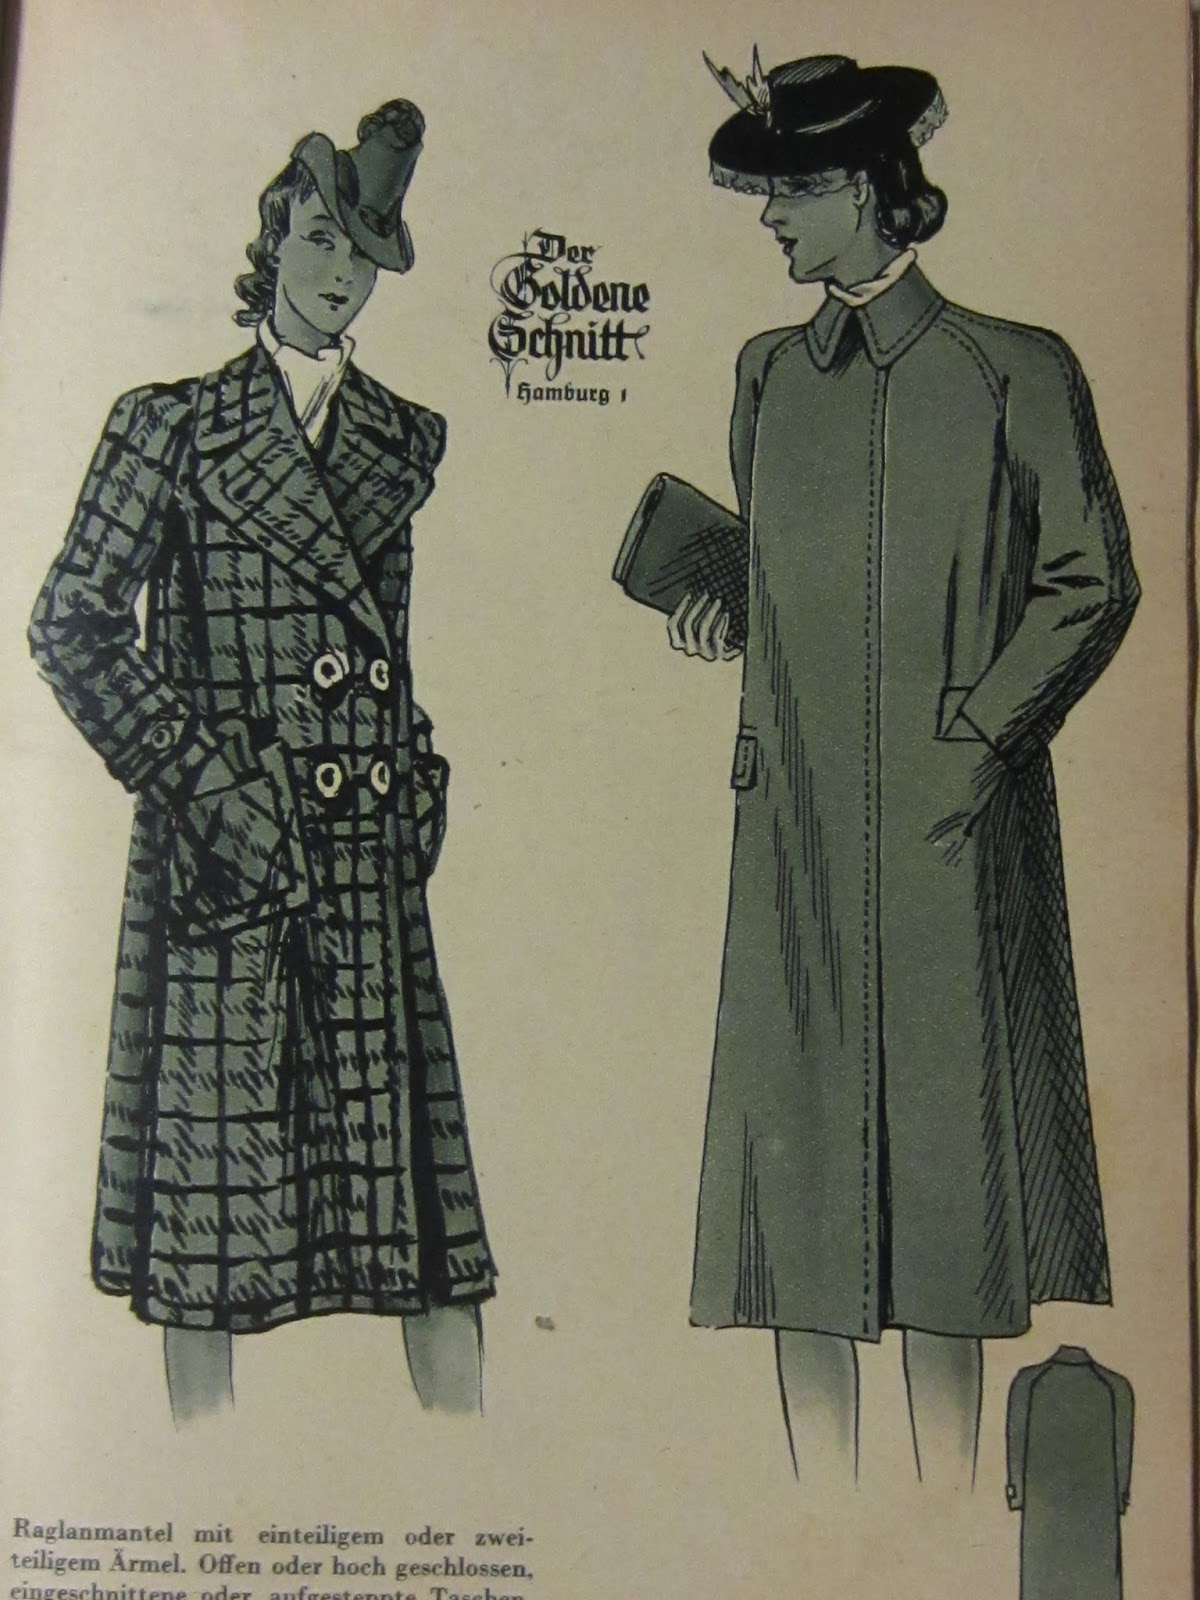 Raglan Sleeved Coats, 1940